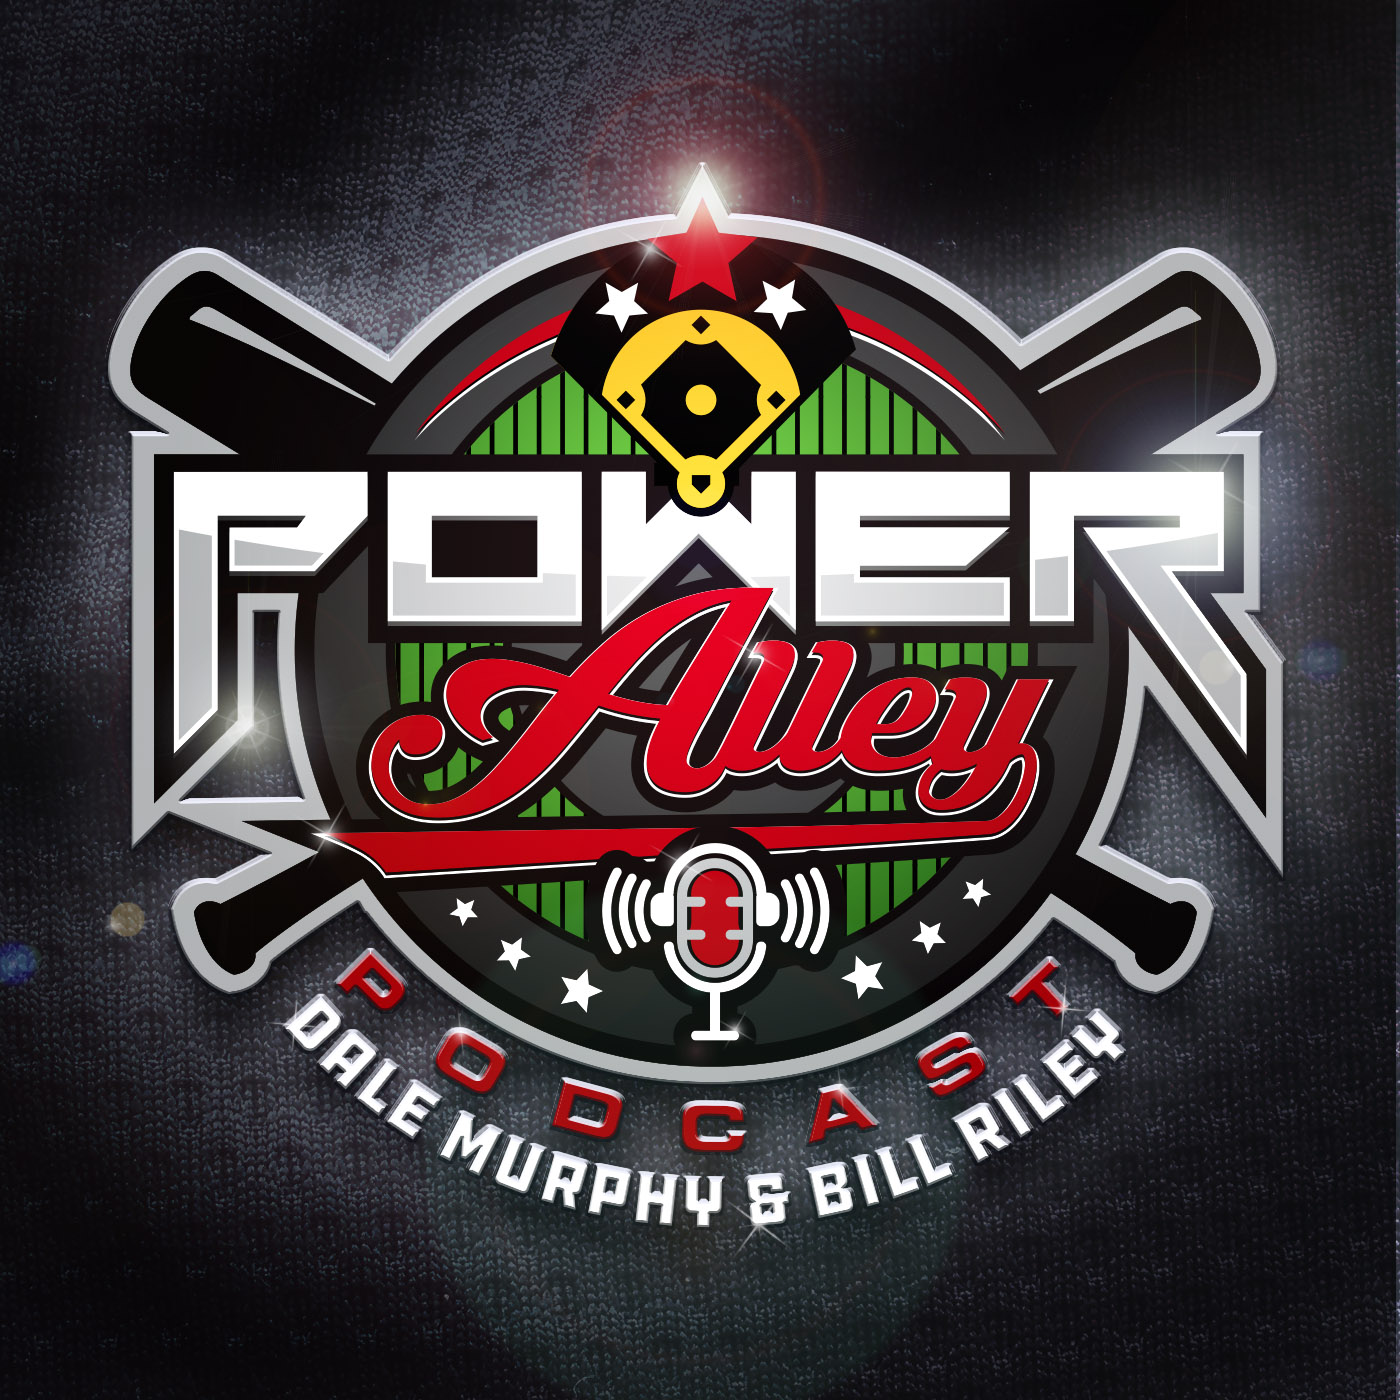 Dale Murphy's alumni weekend in Atlanta – The Power Alley #011 - ESPN700